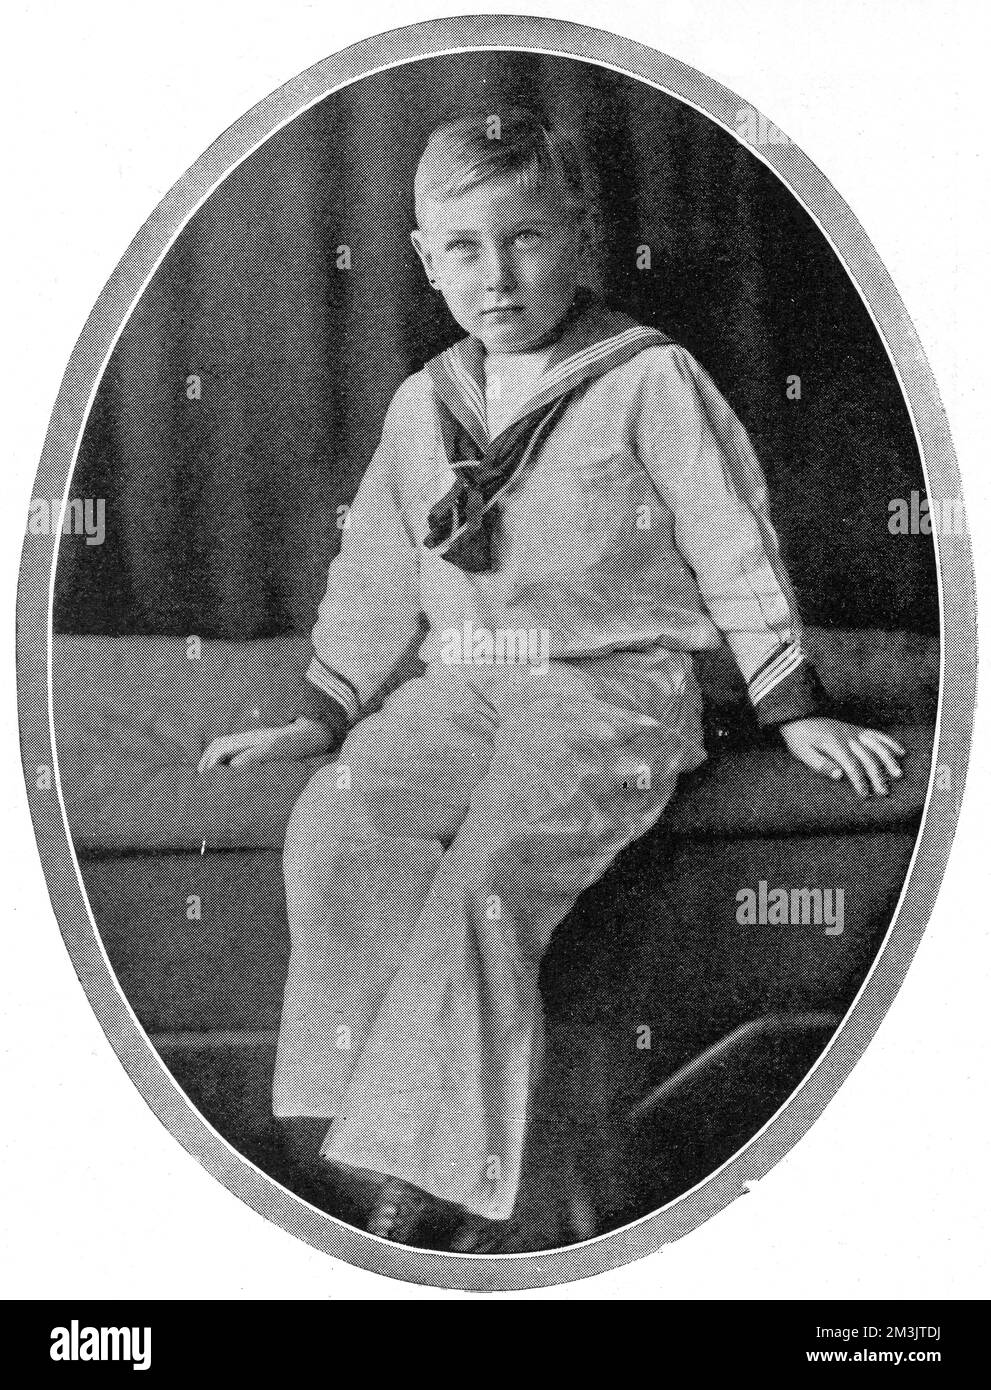 Principe Giovanni (1904 - 1919), quinto e più giovane figlio di Giorgio V e della Regina Maria. Dopo aver sviluppato l'epilessia all'età di quattro anni, John è stato tenuto sempre più lontano dall'occhio pubblico ed è stato curato dal suo infermiere, morendo prematuramente. Foto Stock